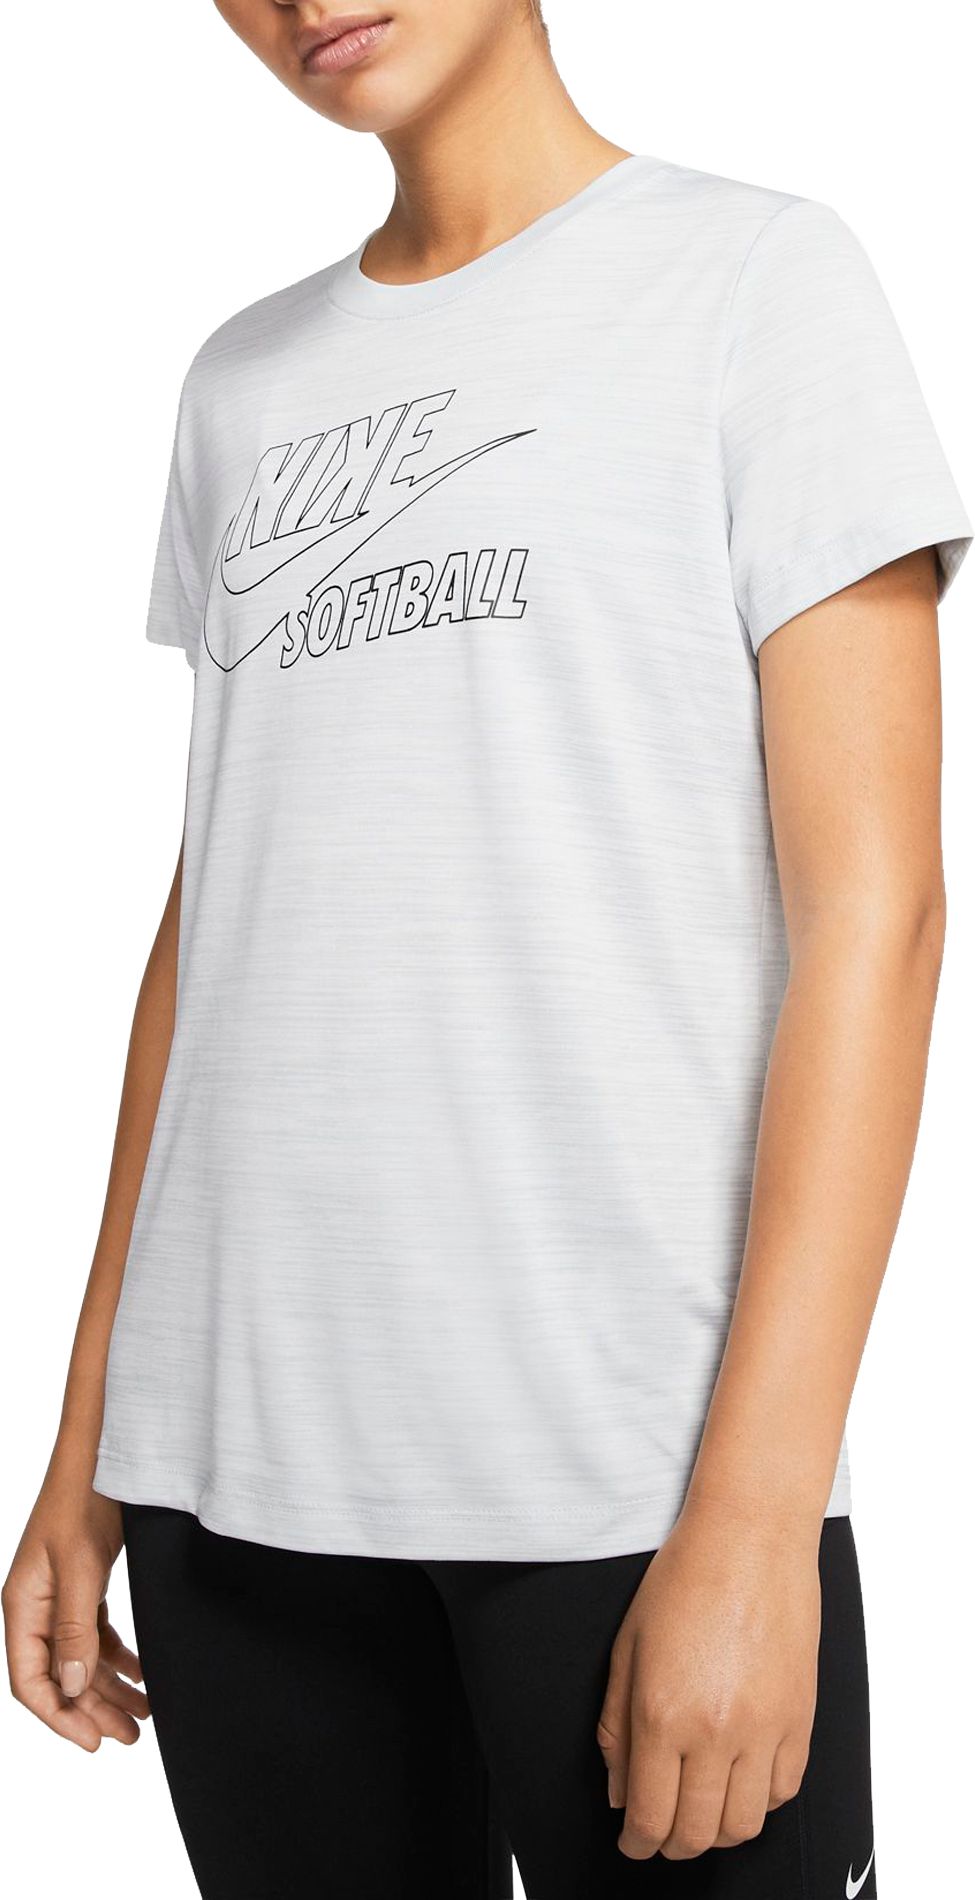 St. Louis Cardinals Nike Legend Practice Velocity T-Shirt - Mens